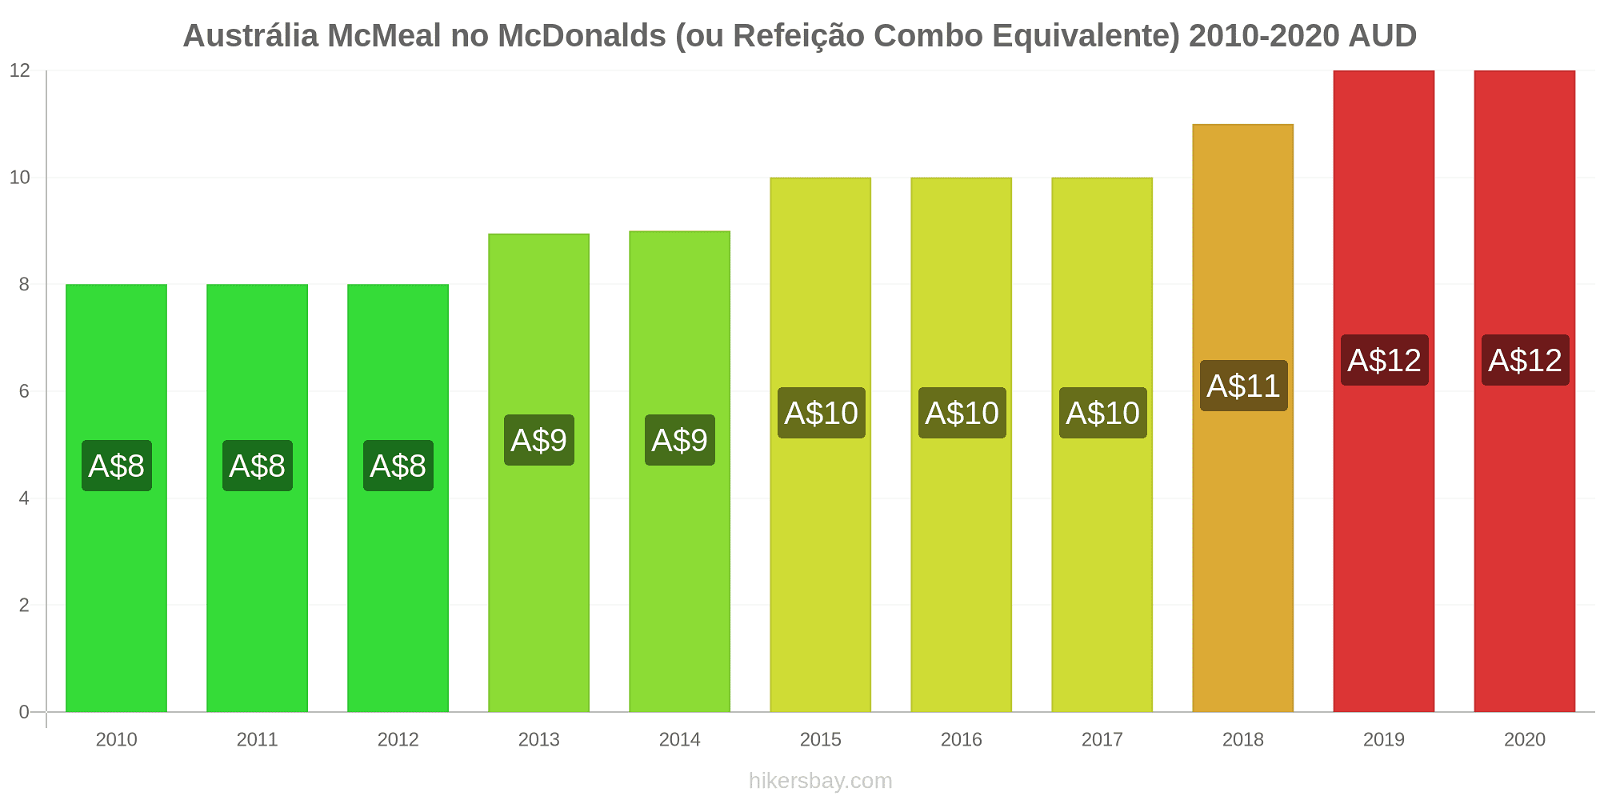 Austrália variação de preço McMeal no McDonald ' s (ou refeição Combo equivalente) hikersbay.com